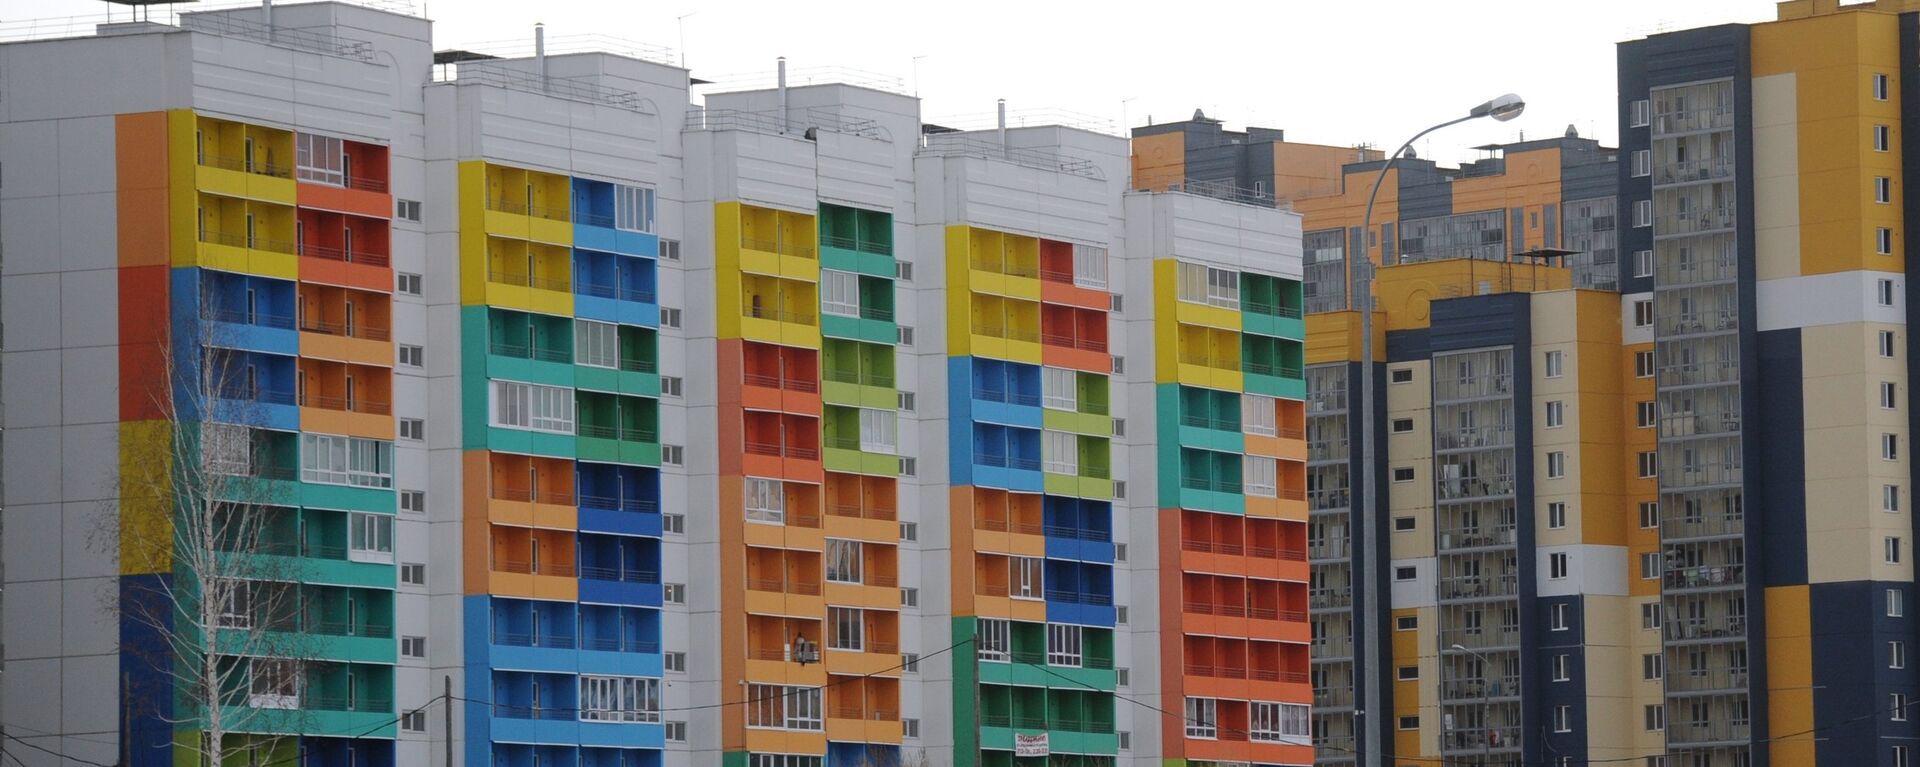 Многоэтажные дома с разноцветным фасадом - Sputnik Узбекистан, 1920, 03.12.2021